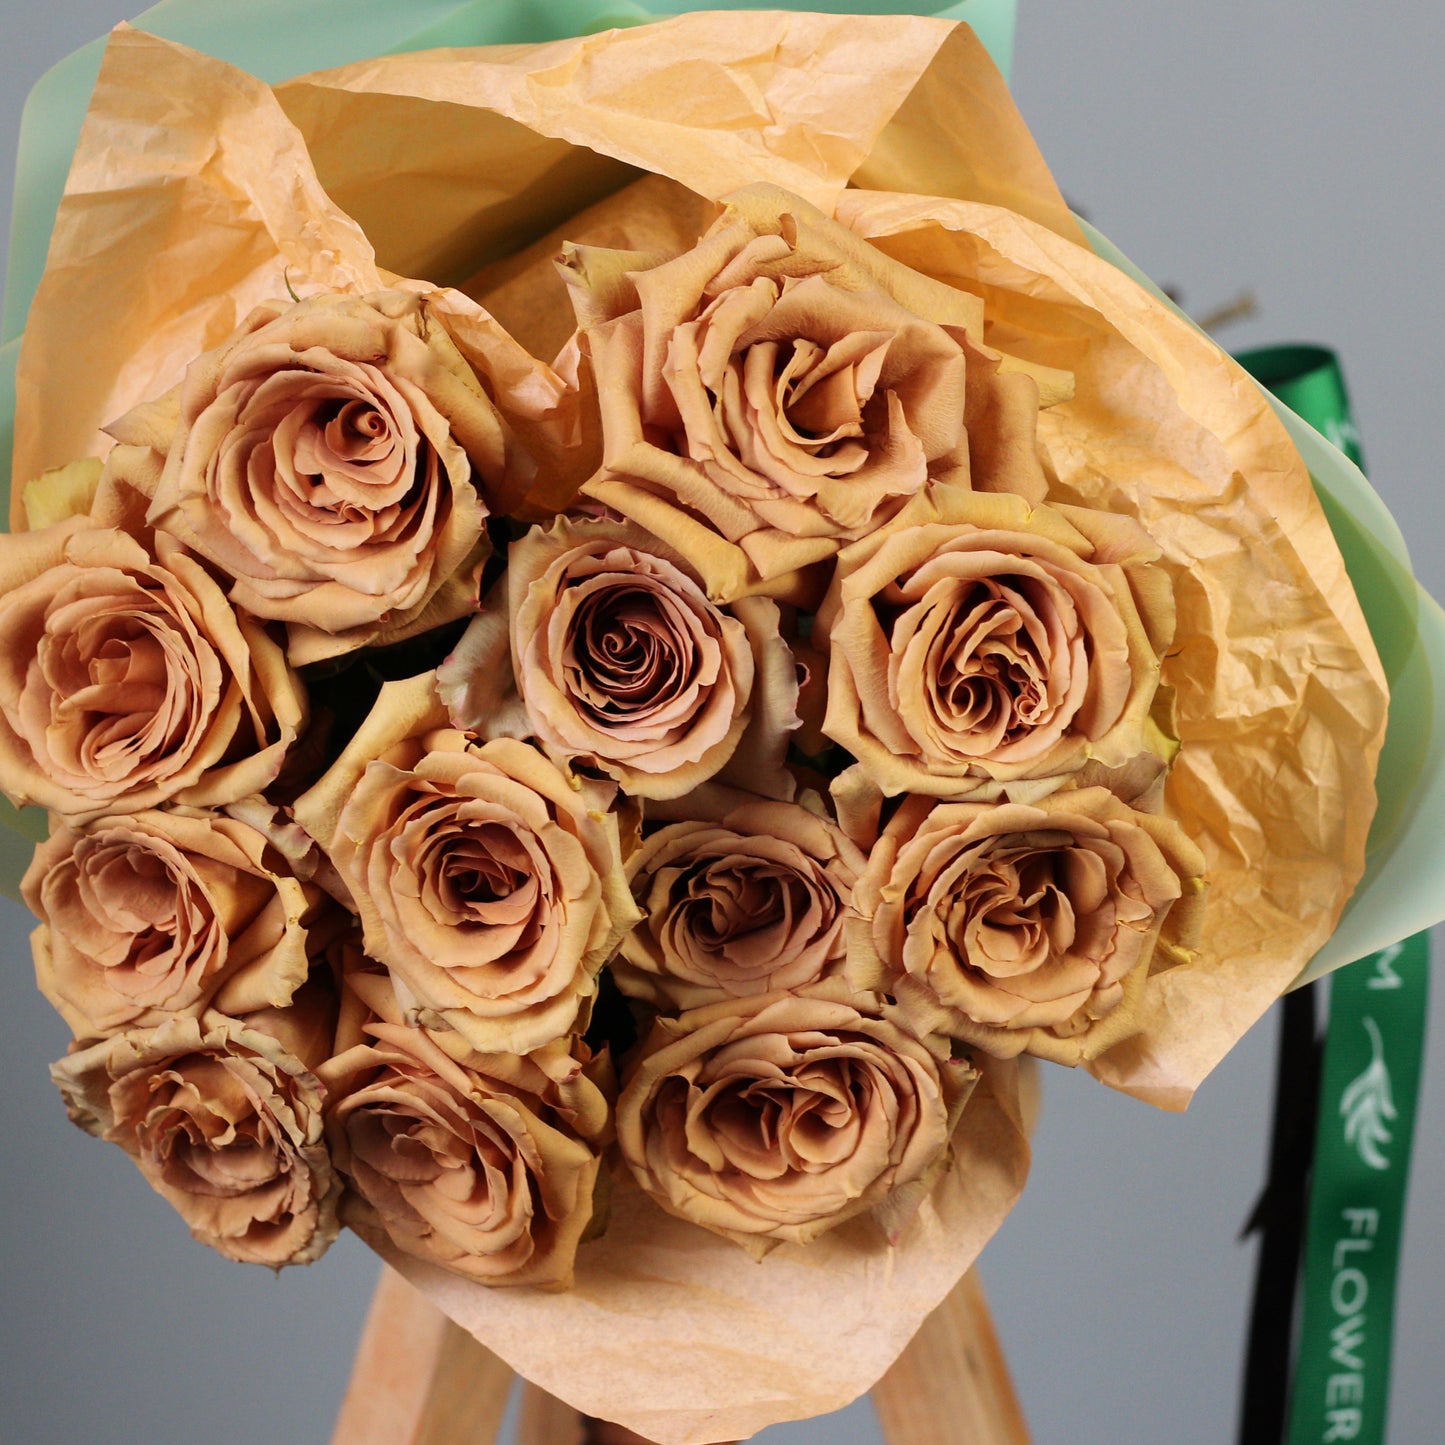 vip roses delivery in portofino Genoa